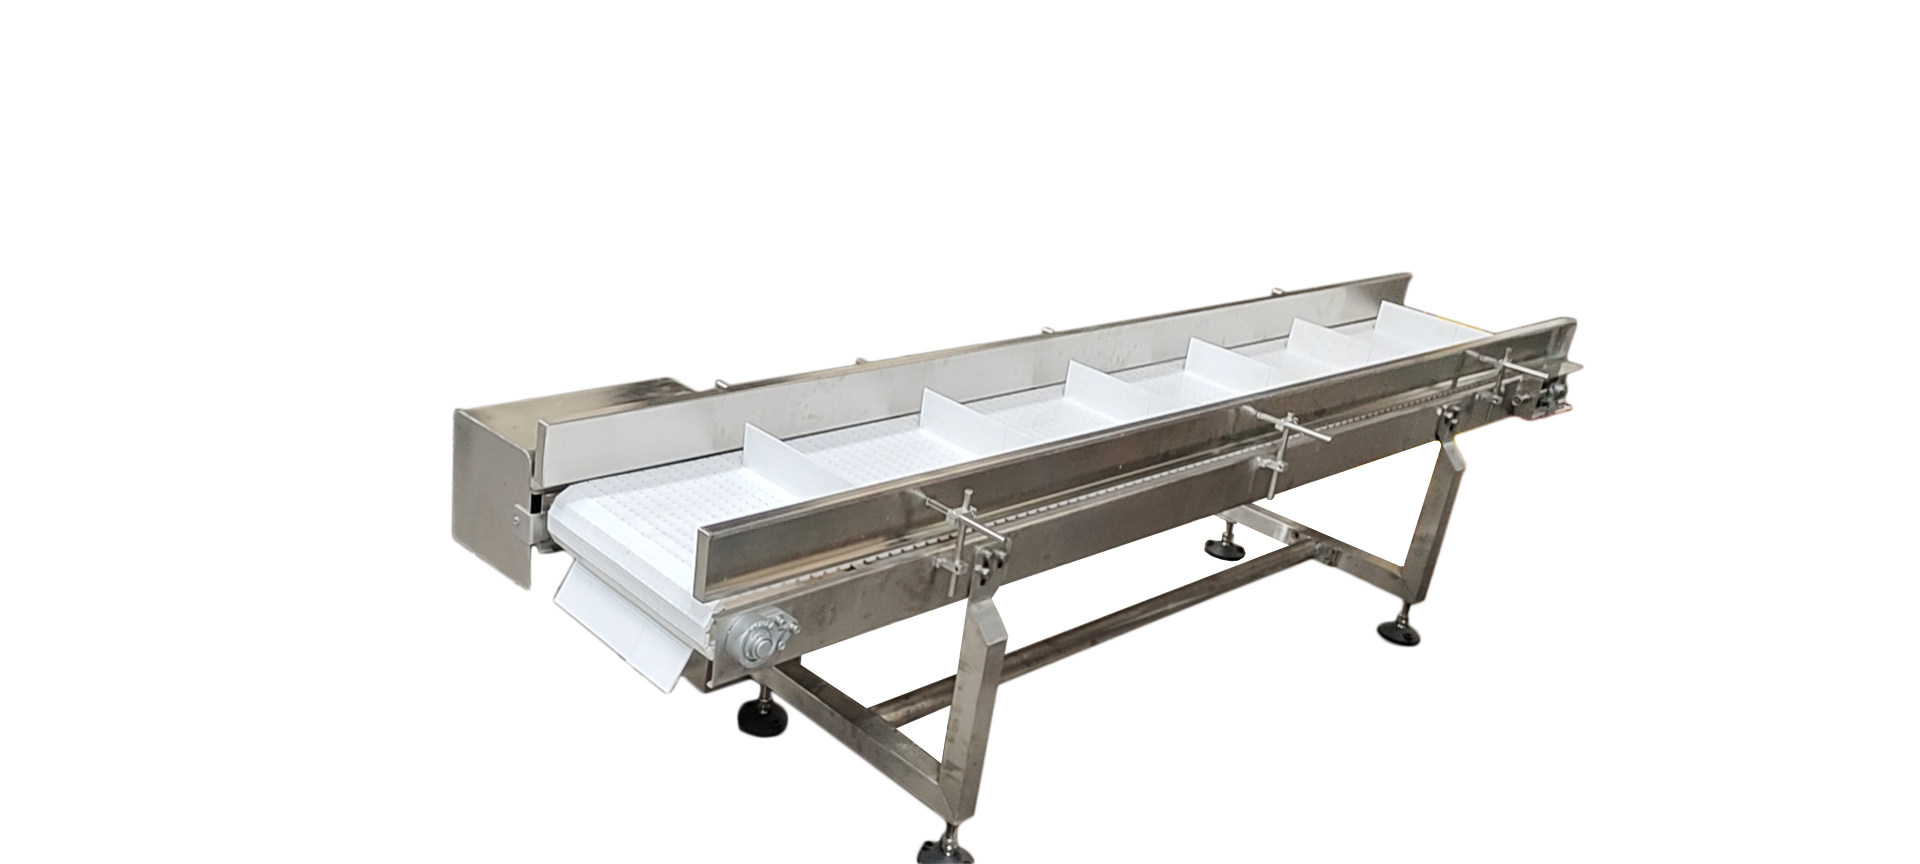 Modular horizontal conveyor